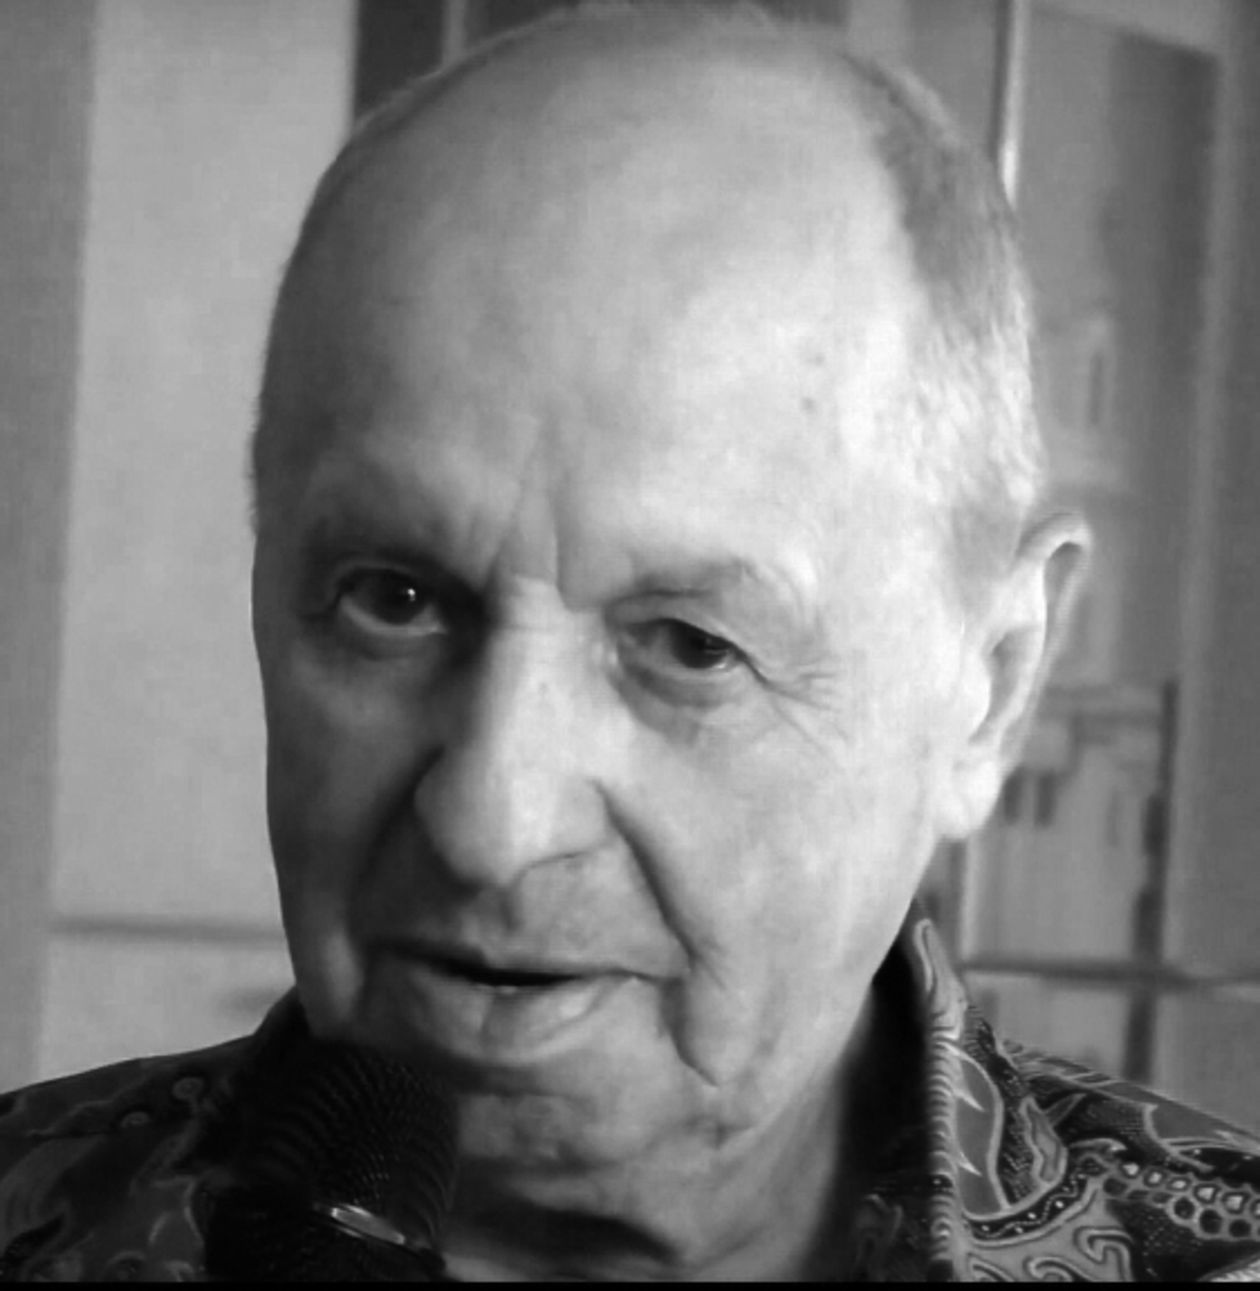  <p><strong>Jerzy Janiszewski</strong></p>
<p>Polski dziennikarz muzyczny, prezenter radiowy. Jerzy Janiszewski urodził się 17 września 1944 roku w Przemyślu.&nbsp;</p>
<p>Debiutował, jeszcze w czasach studenckich, w lubelskim Akademickim Radiu Centrum, kt&oacute;re nie było wtedy dostępne na falach radiowych i działało jako radiowęzeł. Z Radiem Lublin Jerzy Janiszewski związany był od roku 1967 do 2012, wsp&oacute;łpracował też z radiową Tr&oacute;jką, gdzie prowadził nocne audycje wsp&oacute;lnie z Piotrem Kaczkowskim czy Piotrem Metzem, pojawiał się r&oacute;wnież na antenie programu II PR. Słuchaczom lubelskiej rozgłośni regionalnej był znany z kilku audycji: Wehikuł Czasu, Beatlemania, Barachołka, a także z Poranka z radiem.</p>
<p>Janiszewski uznawany jest wręcz za odkrywcę Budki Suflera.&nbsp;&nbsp;</p>
<p>Był też producentem nagrań w Radiu Lublin, gdzie przez kilka dekad kierował słynnym studiem Hendrix. Był r&oacute;wnież menadżerem, realizatorem tras koncertowych i dobrym duchem Urszuli i Budki Suflera.</p>